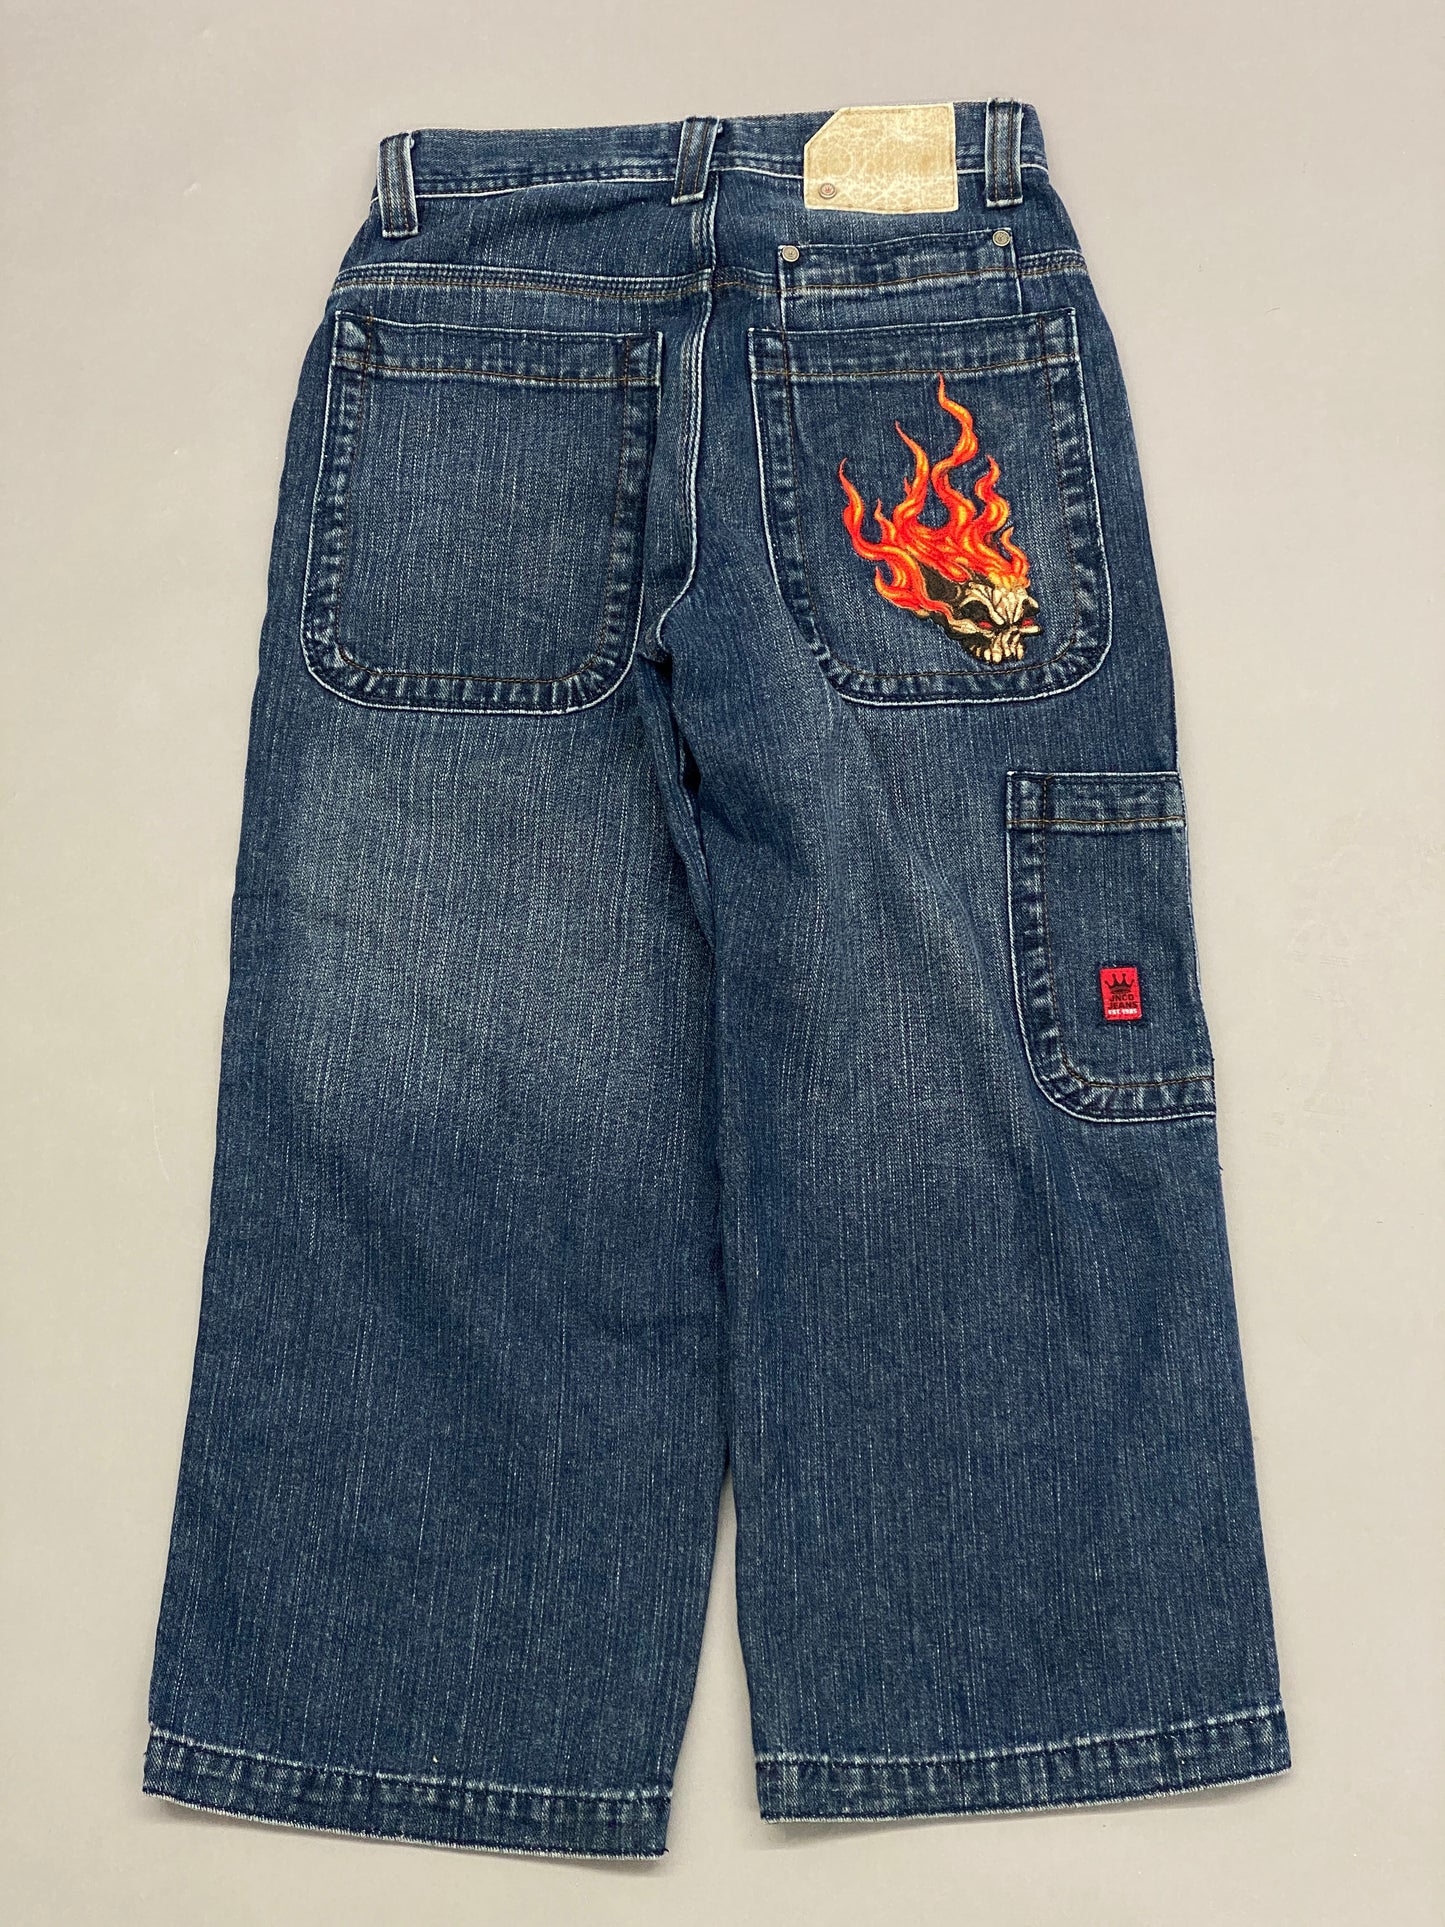 JNCO Flame Skull Vintage Jeans - 28